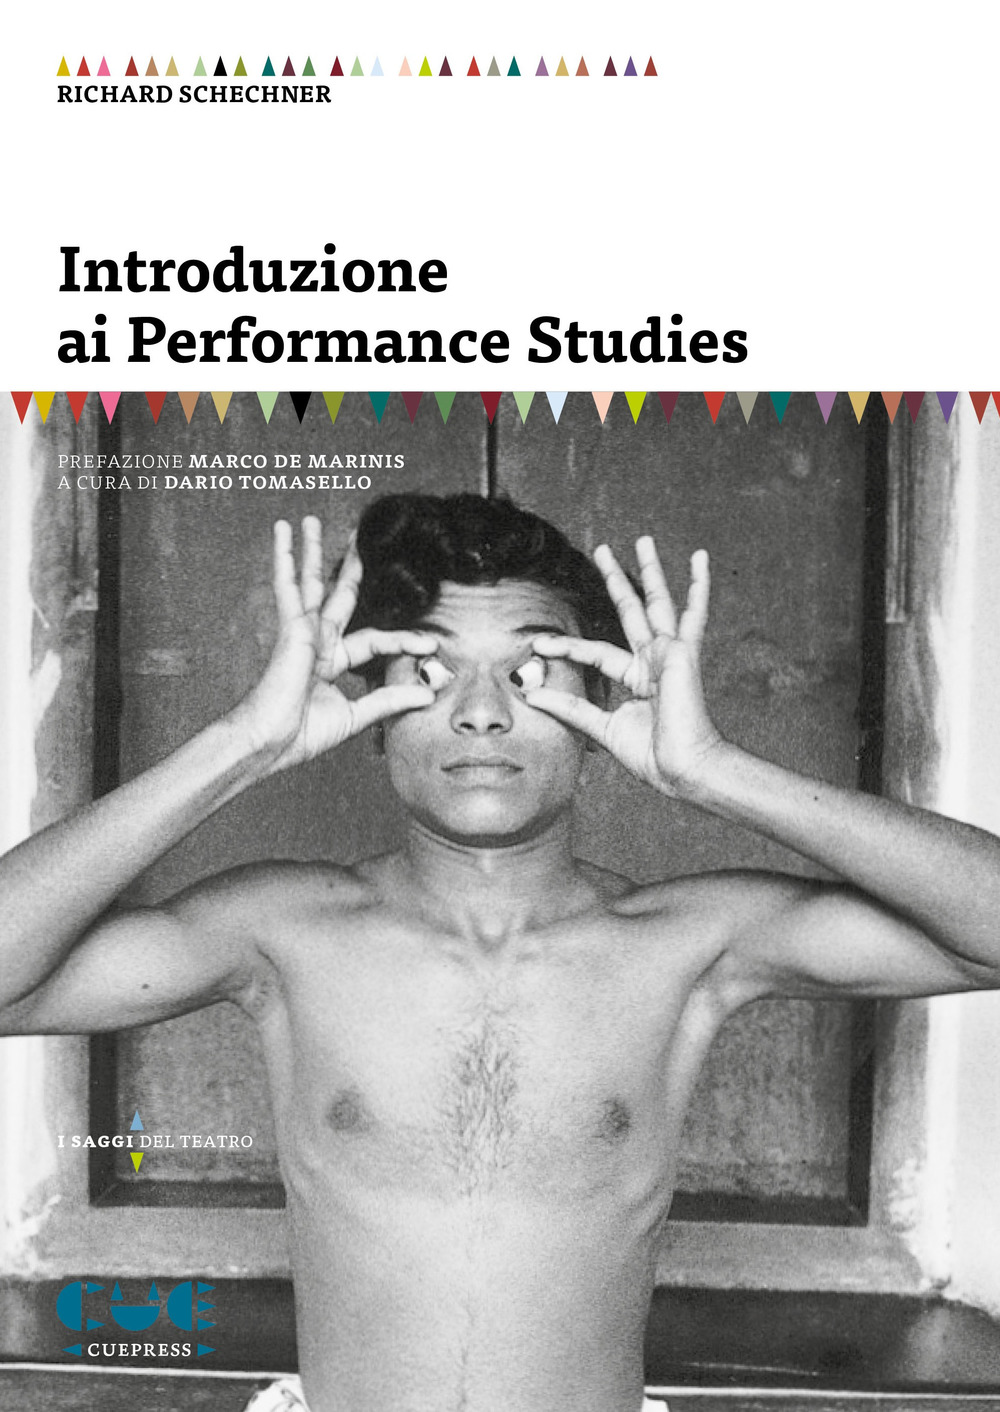 Libri Richard Schechner - Introduzione Ai Performance Studies NUOVO SIGILLATO, EDIZIONE DEL 27/11/2018 SUBITO DISPONIBILE